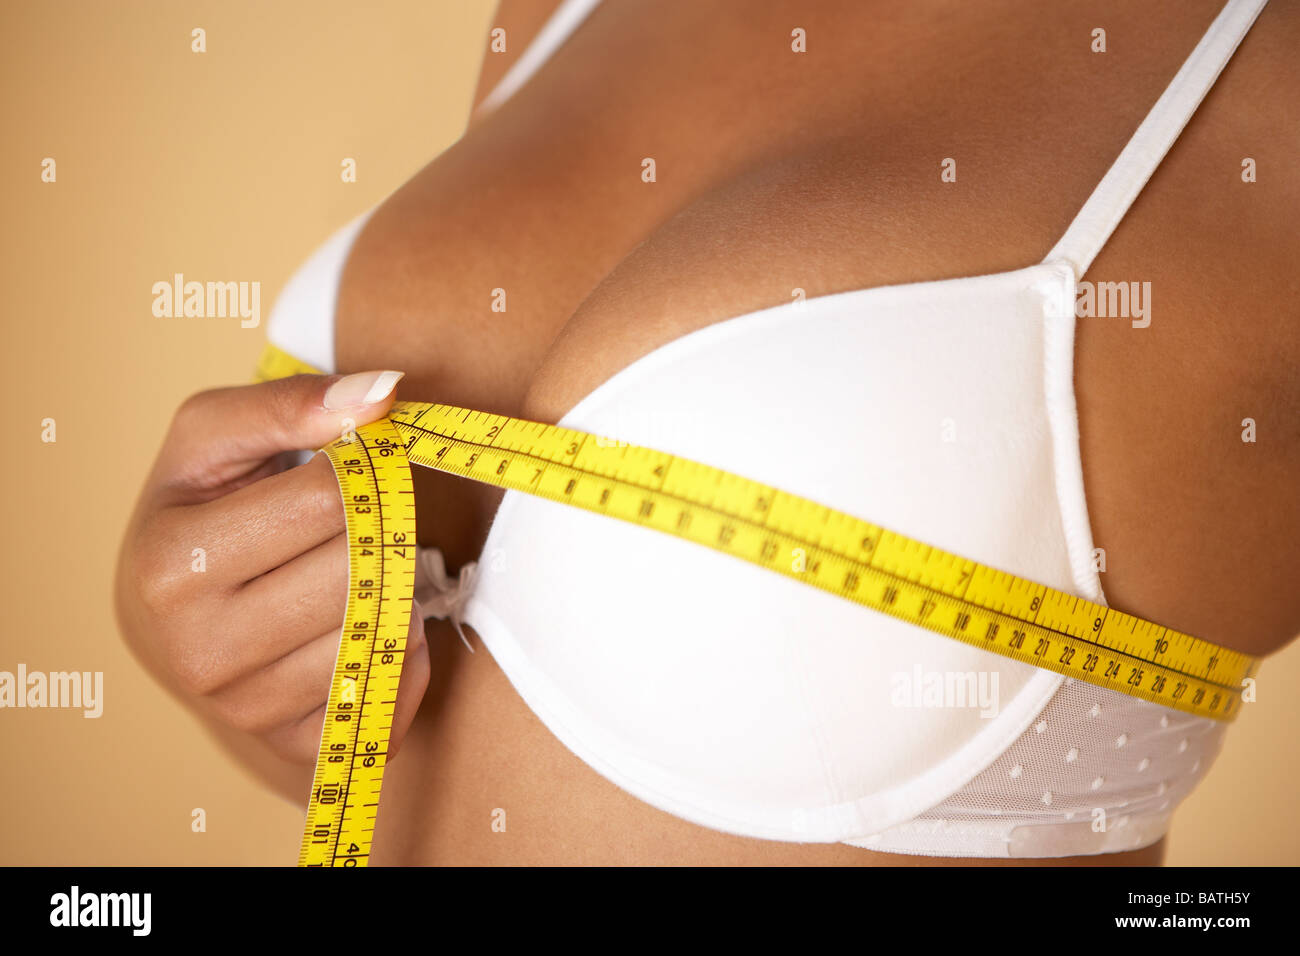 Dimensione del seno. Donna misurando la sua dimensione del seno (busto dimensioni) con un nastro di misurazione. Foto Stock